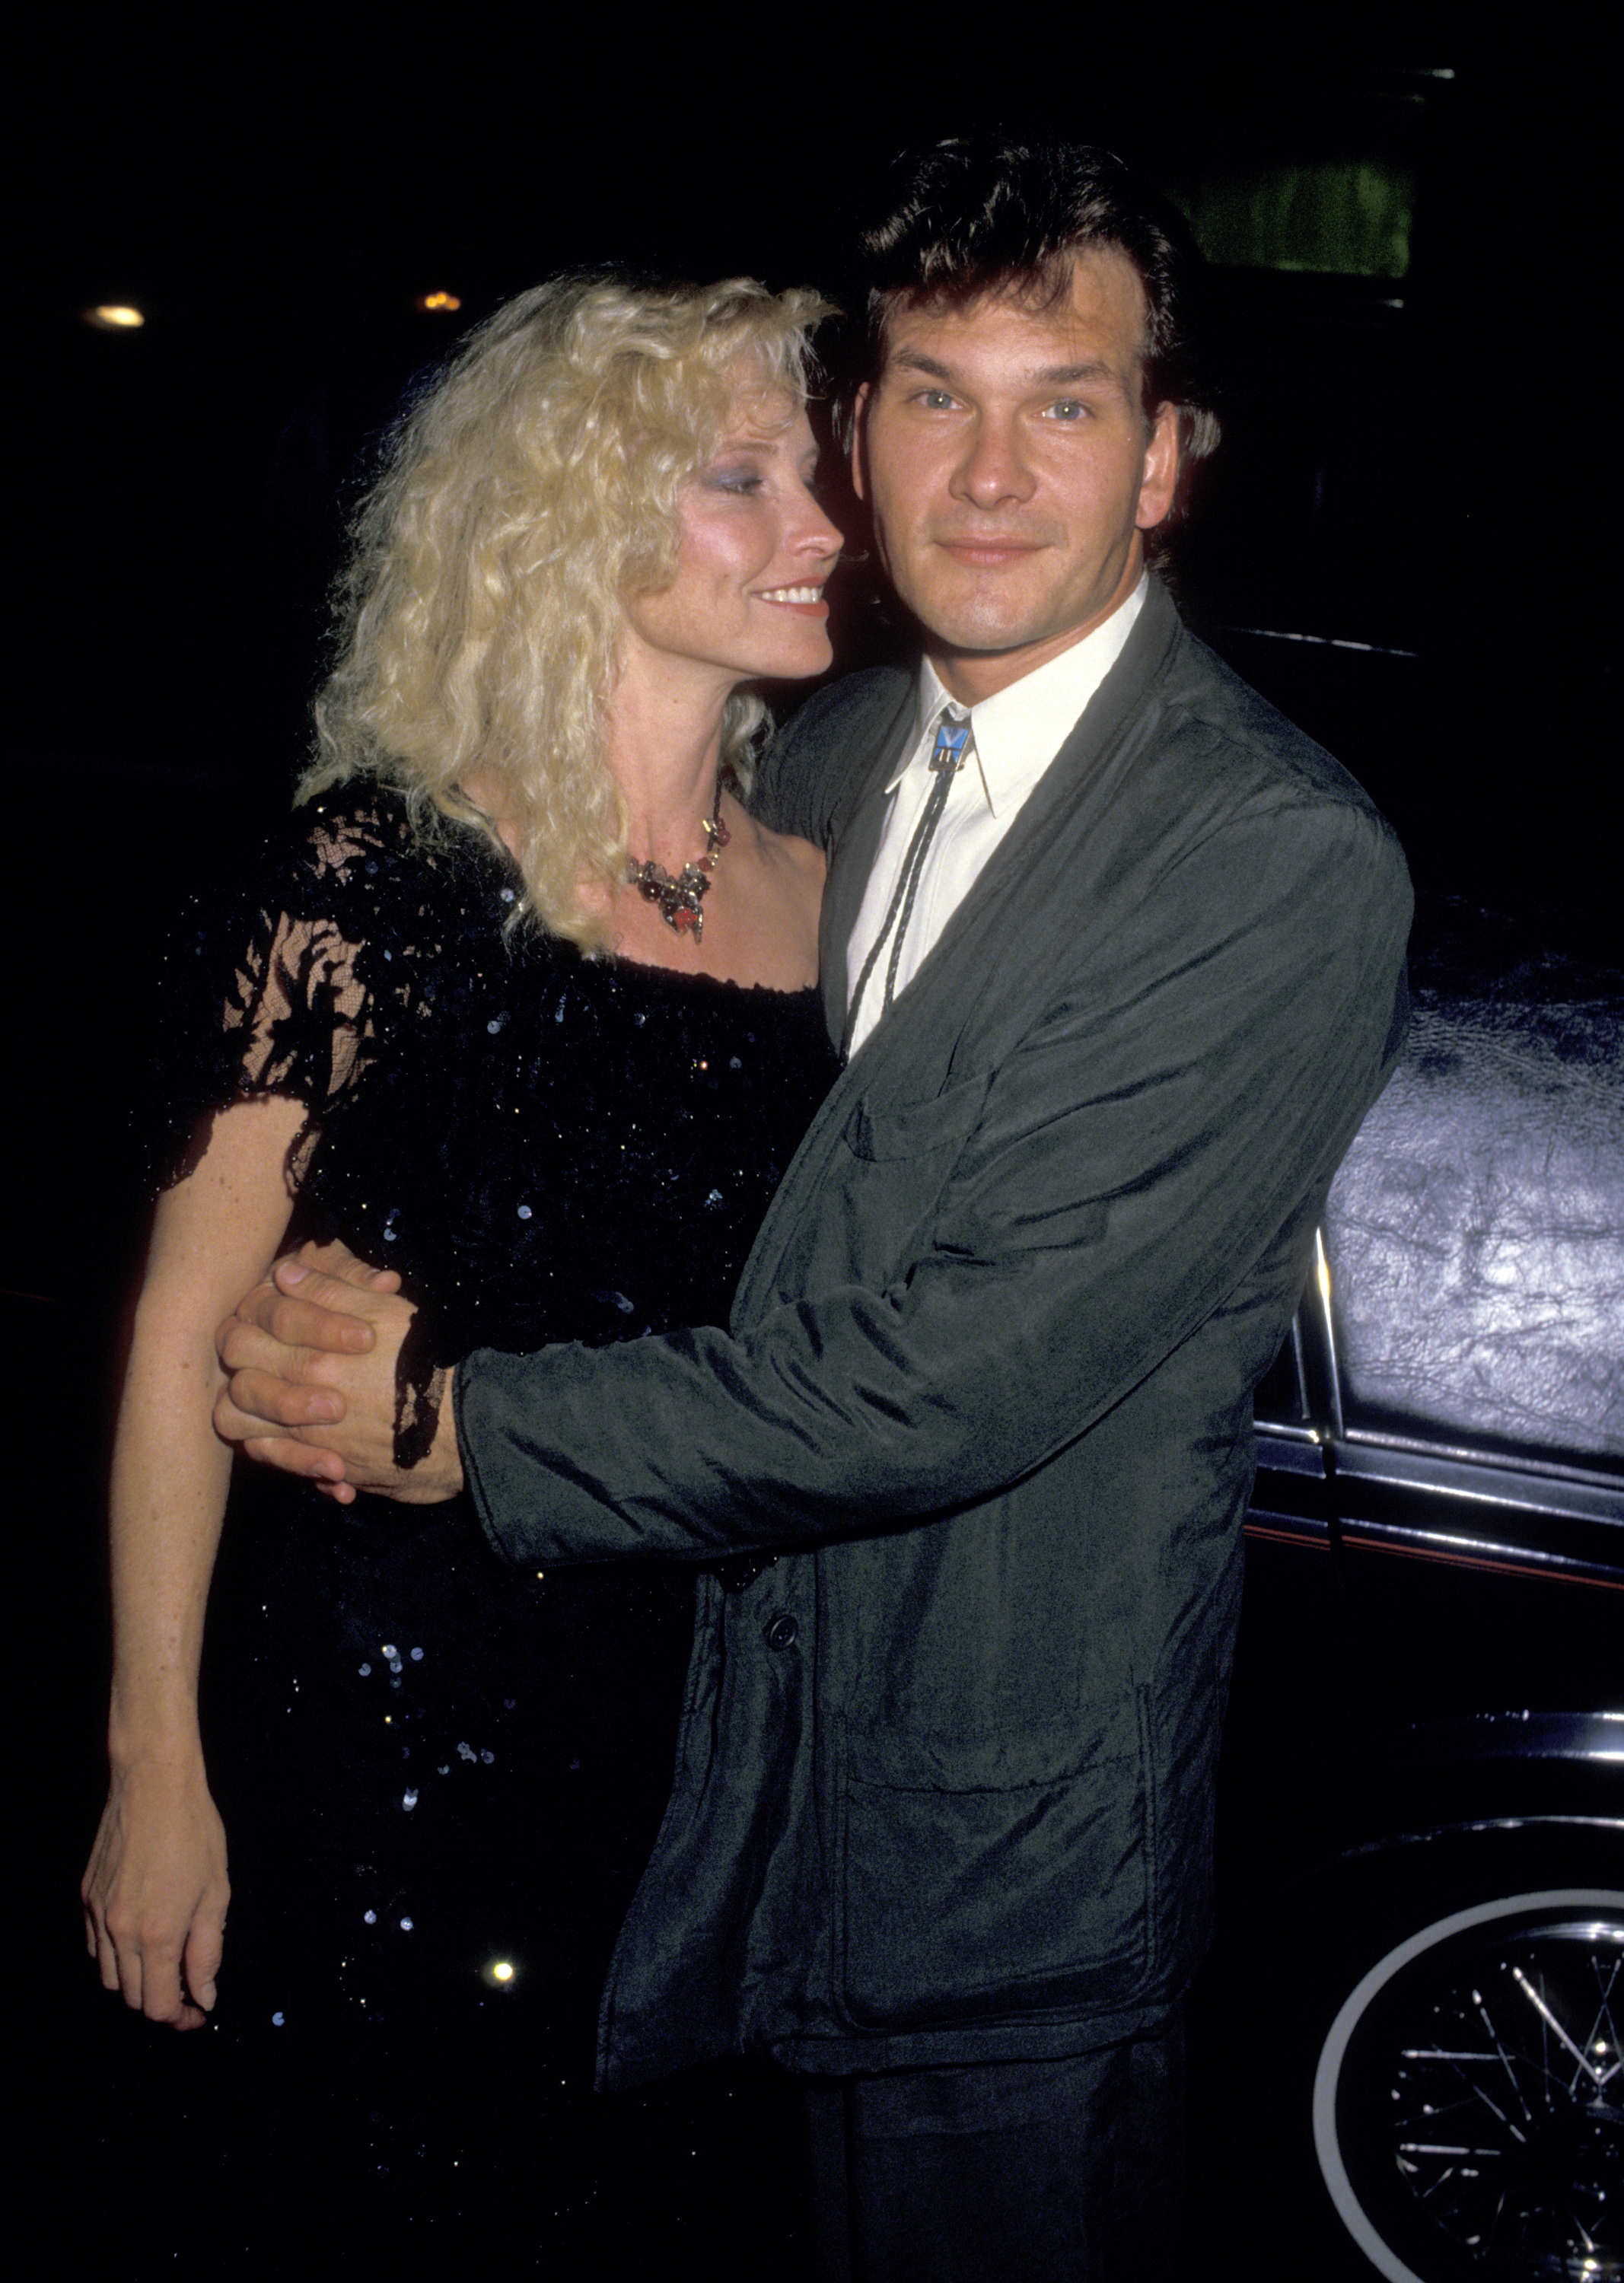 Lisa Niemi y Patrick Swayze en el estreno de "Dirty Dancing" el 17 de agosto de 1987 en el Teatro Gemini de Nueva York | Foto: Getty Images